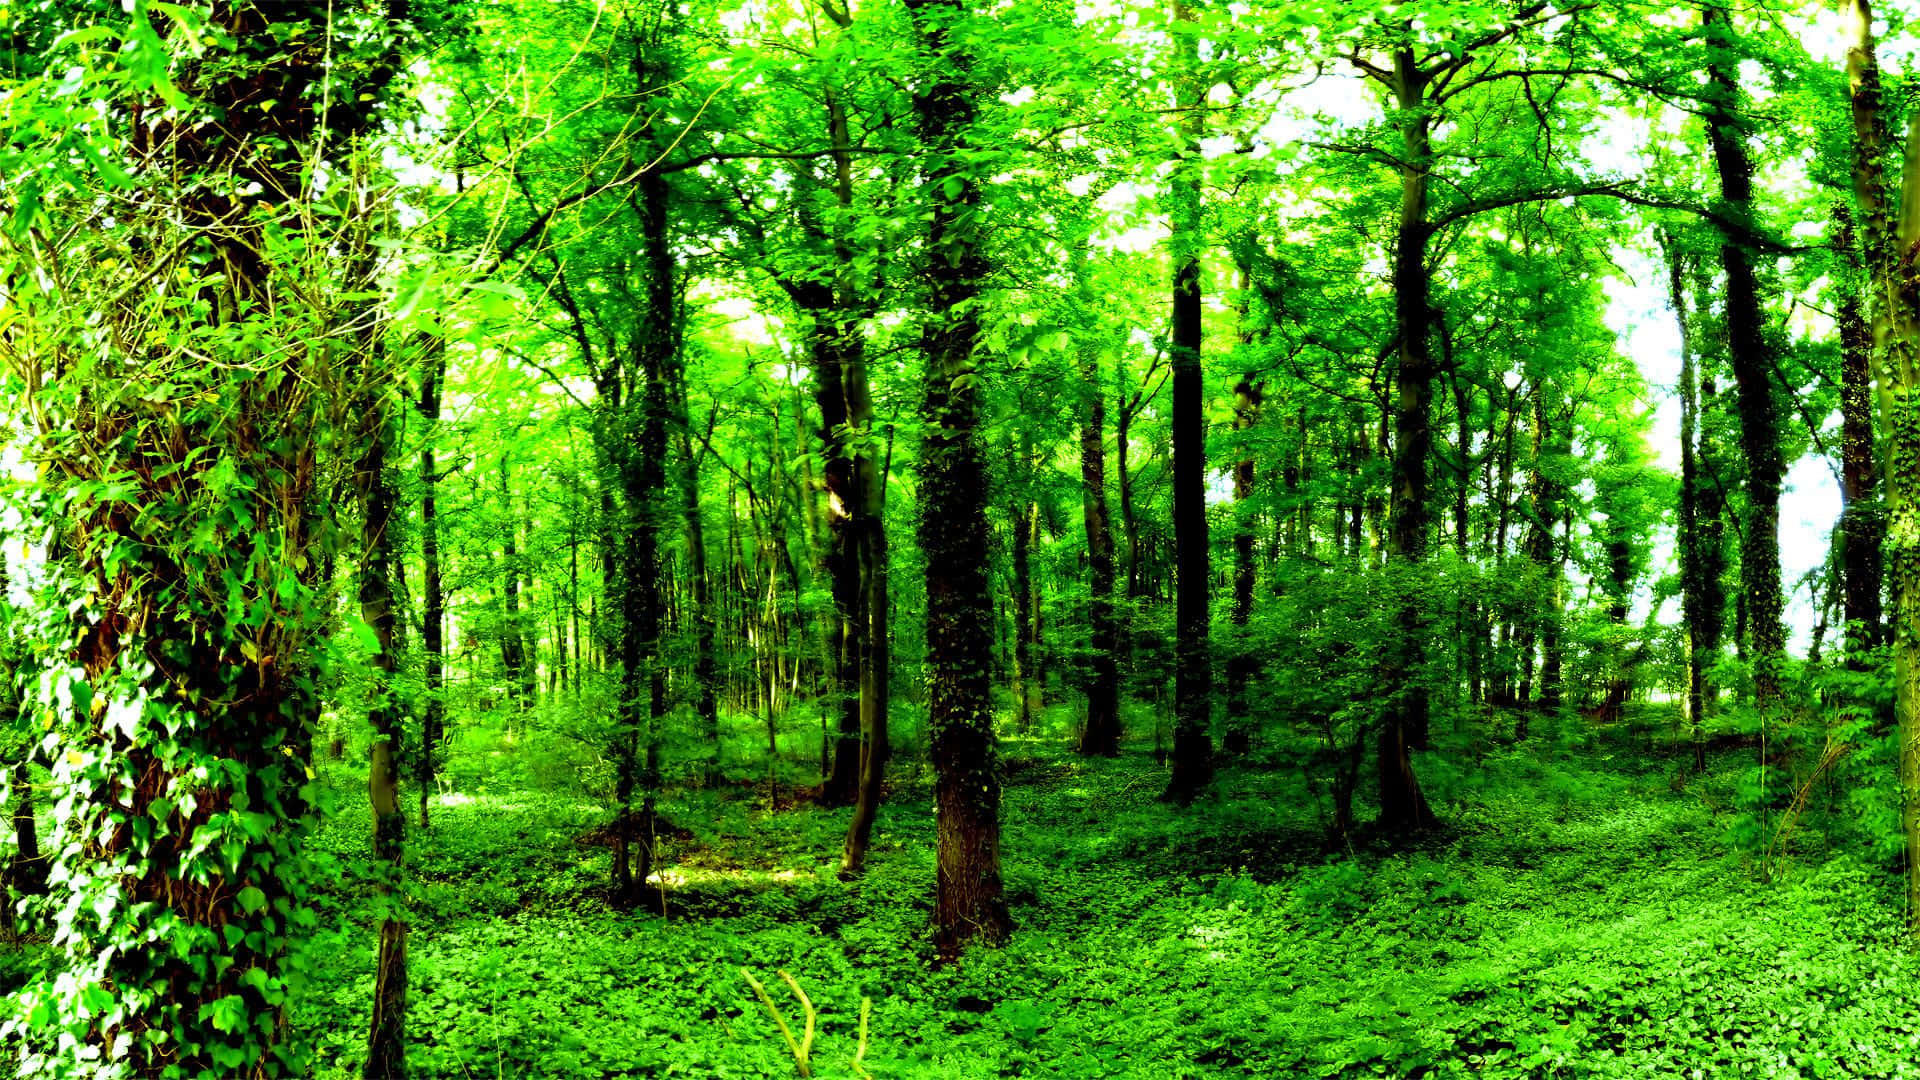 Nyd det sceniske skovgrønne udsigter til naturen med denne tapet. Wallpaper